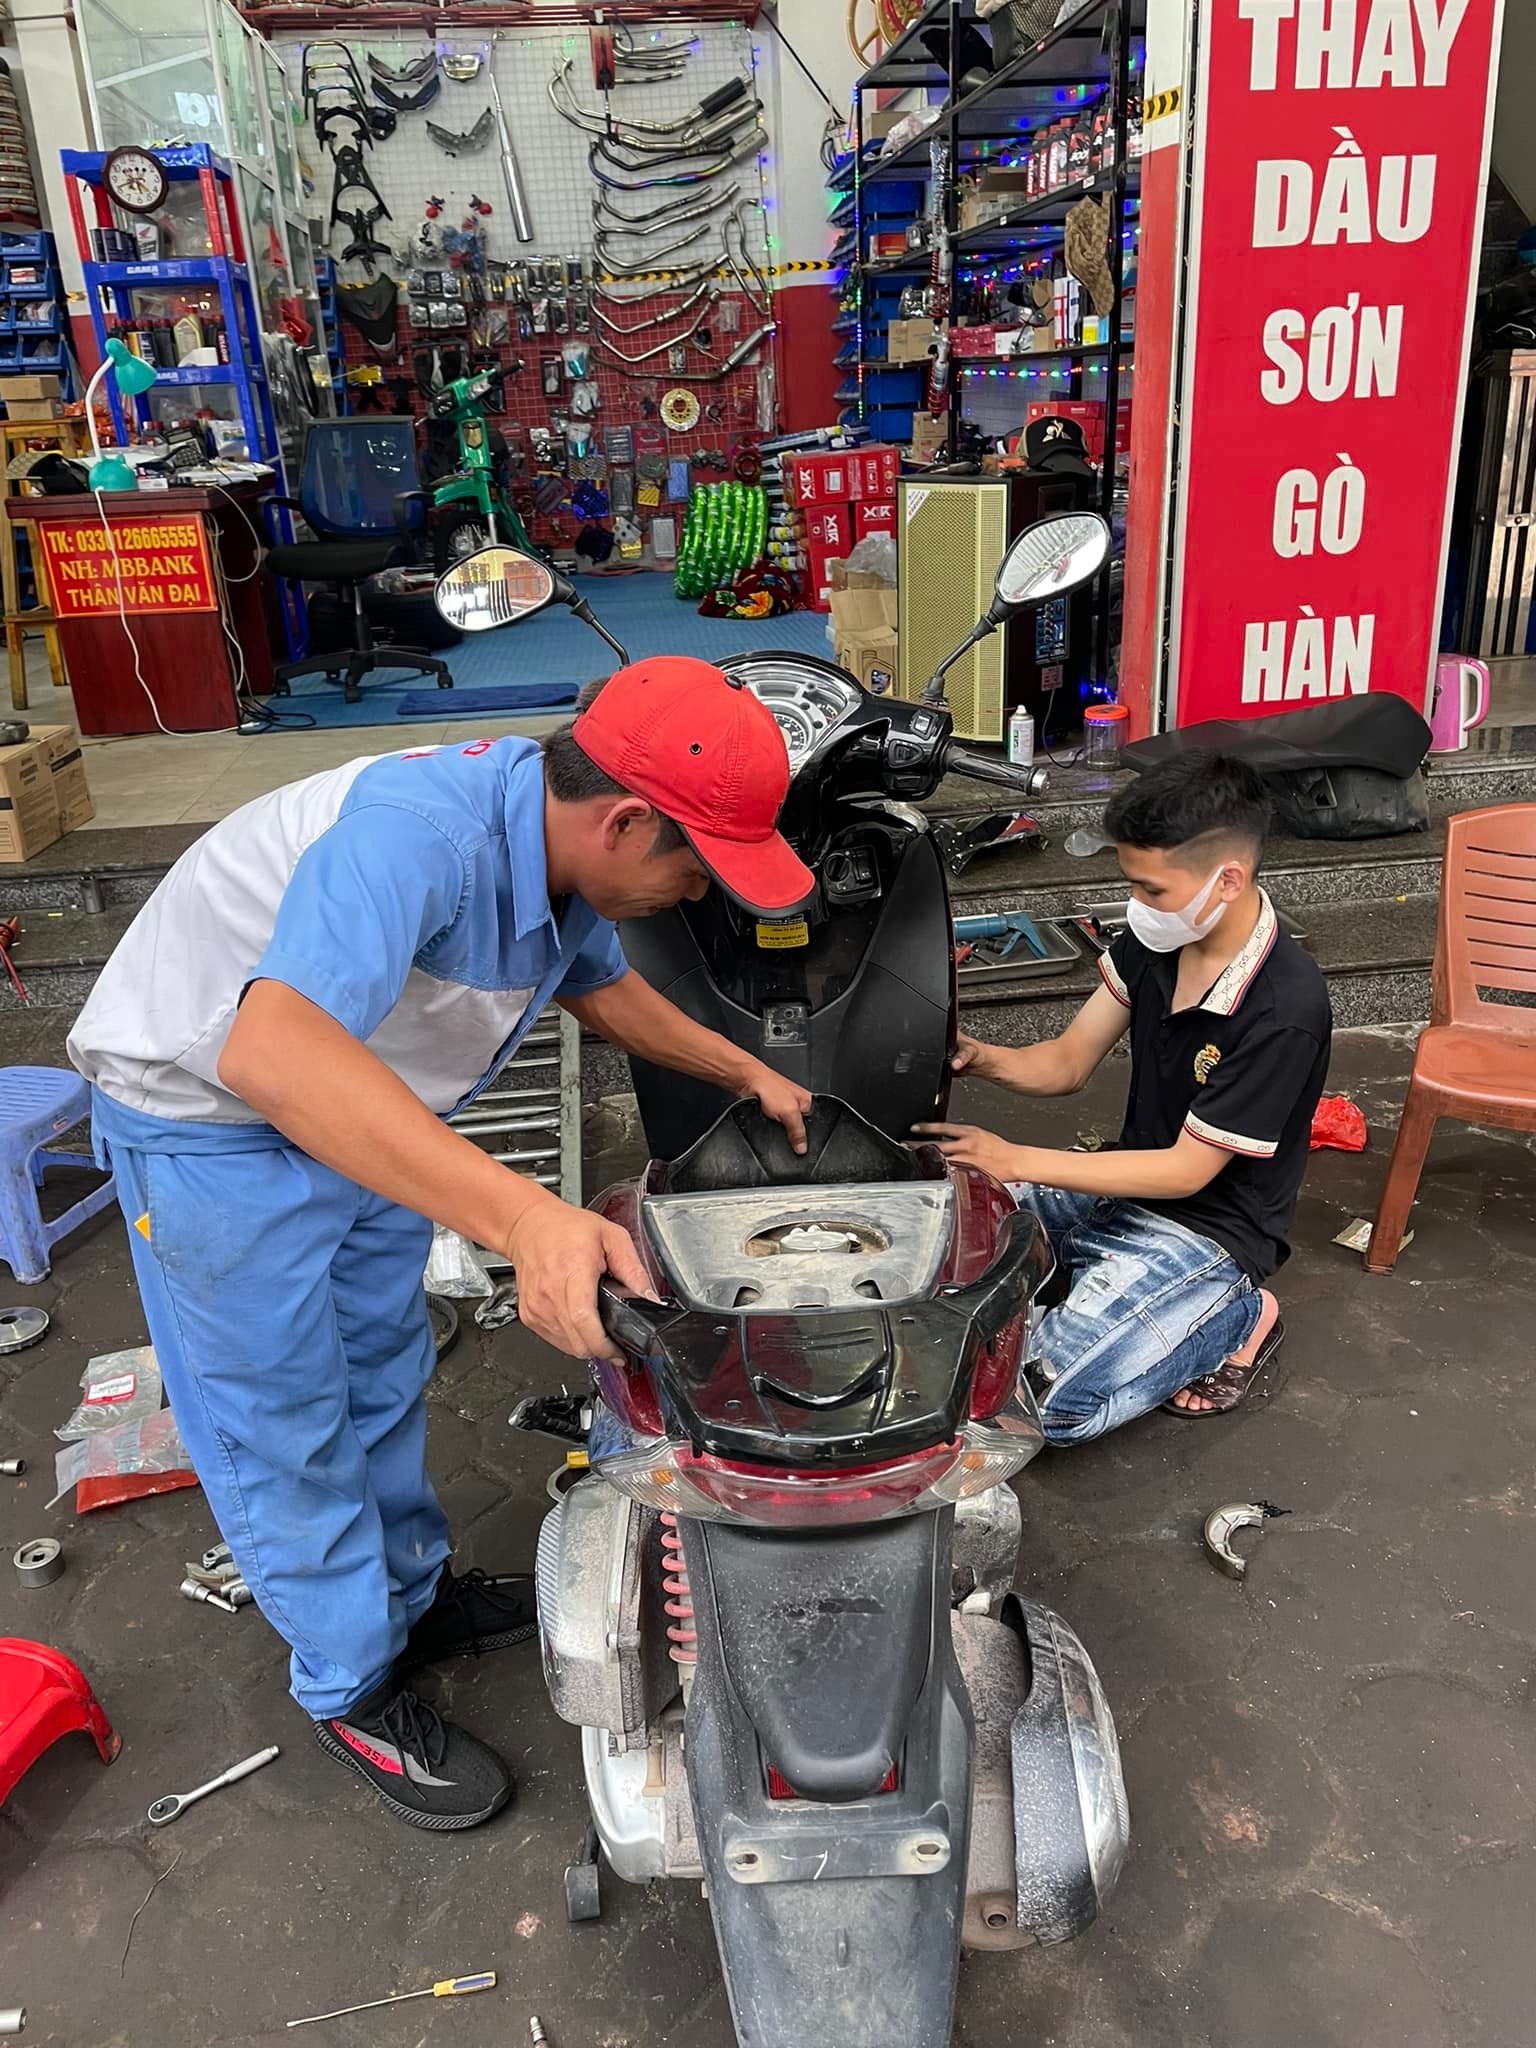 Chuyên Bán xe đạp điện cũ giá rẻ bảo hành dài tại Bắc Giang